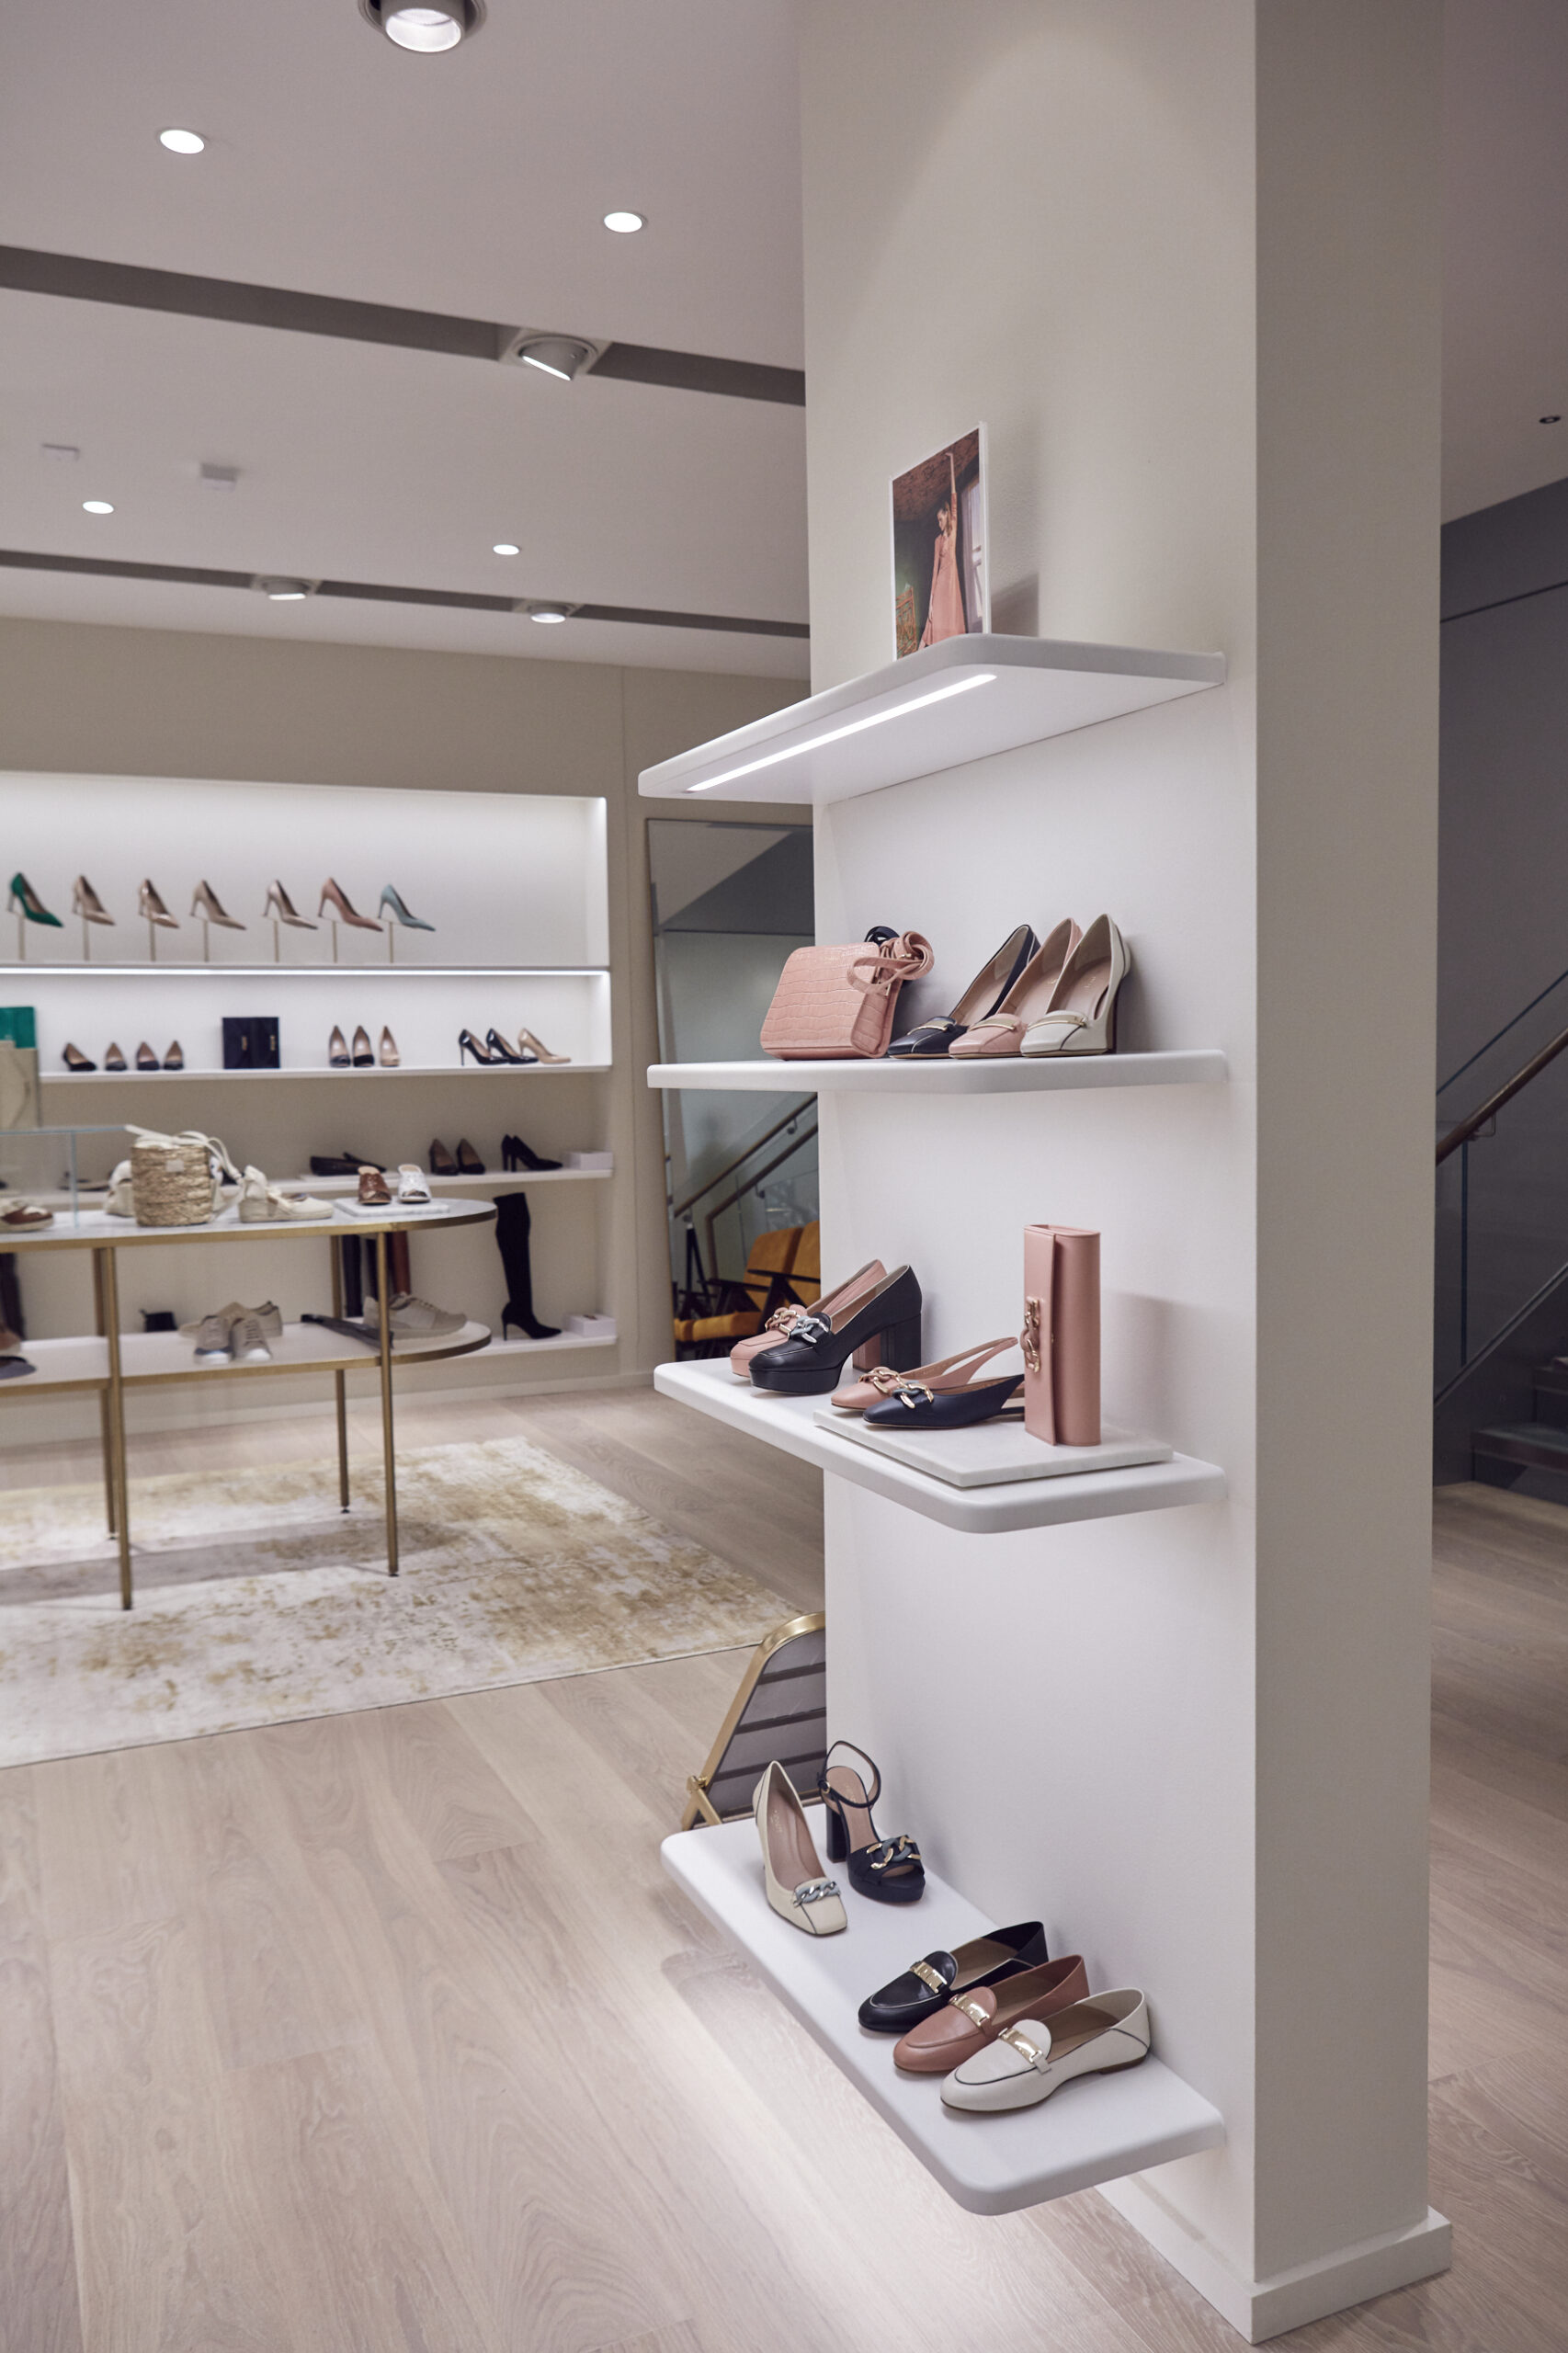 LK Bennett opens New Bond Street Flagship store - Retail Focus - Retail ...